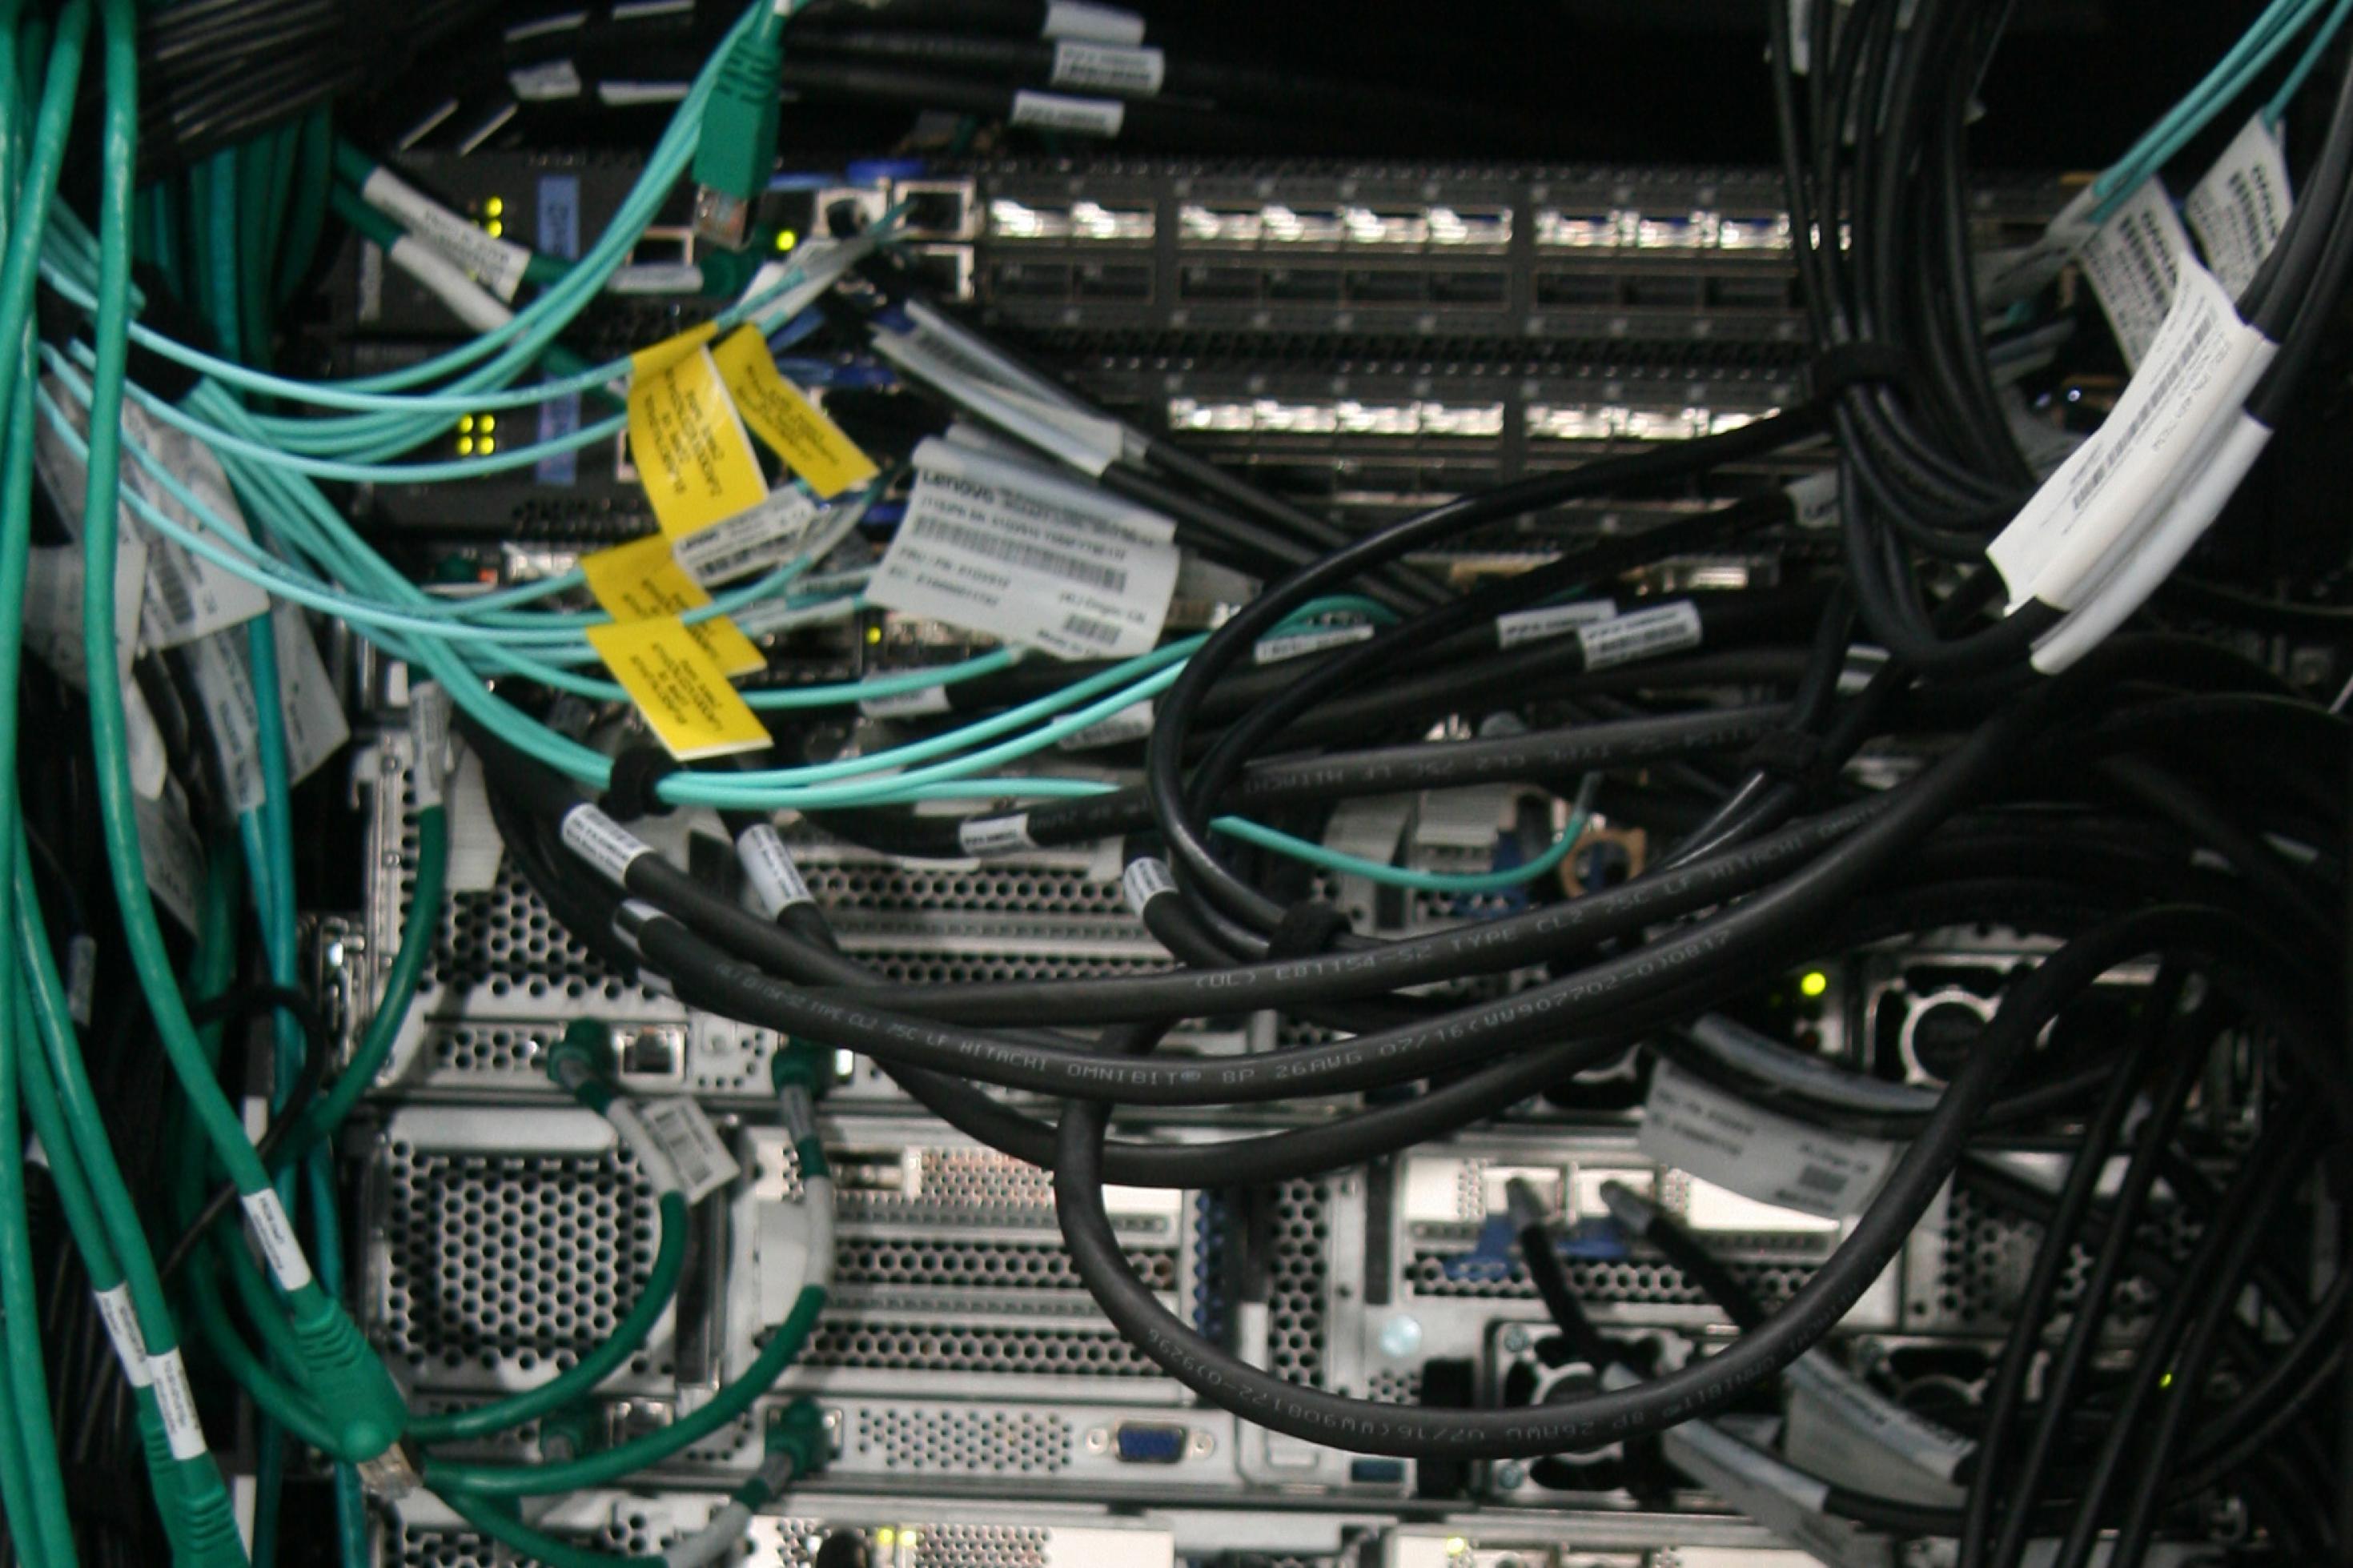 Netzwerkverkabelung auf der Hinterseite des Rack